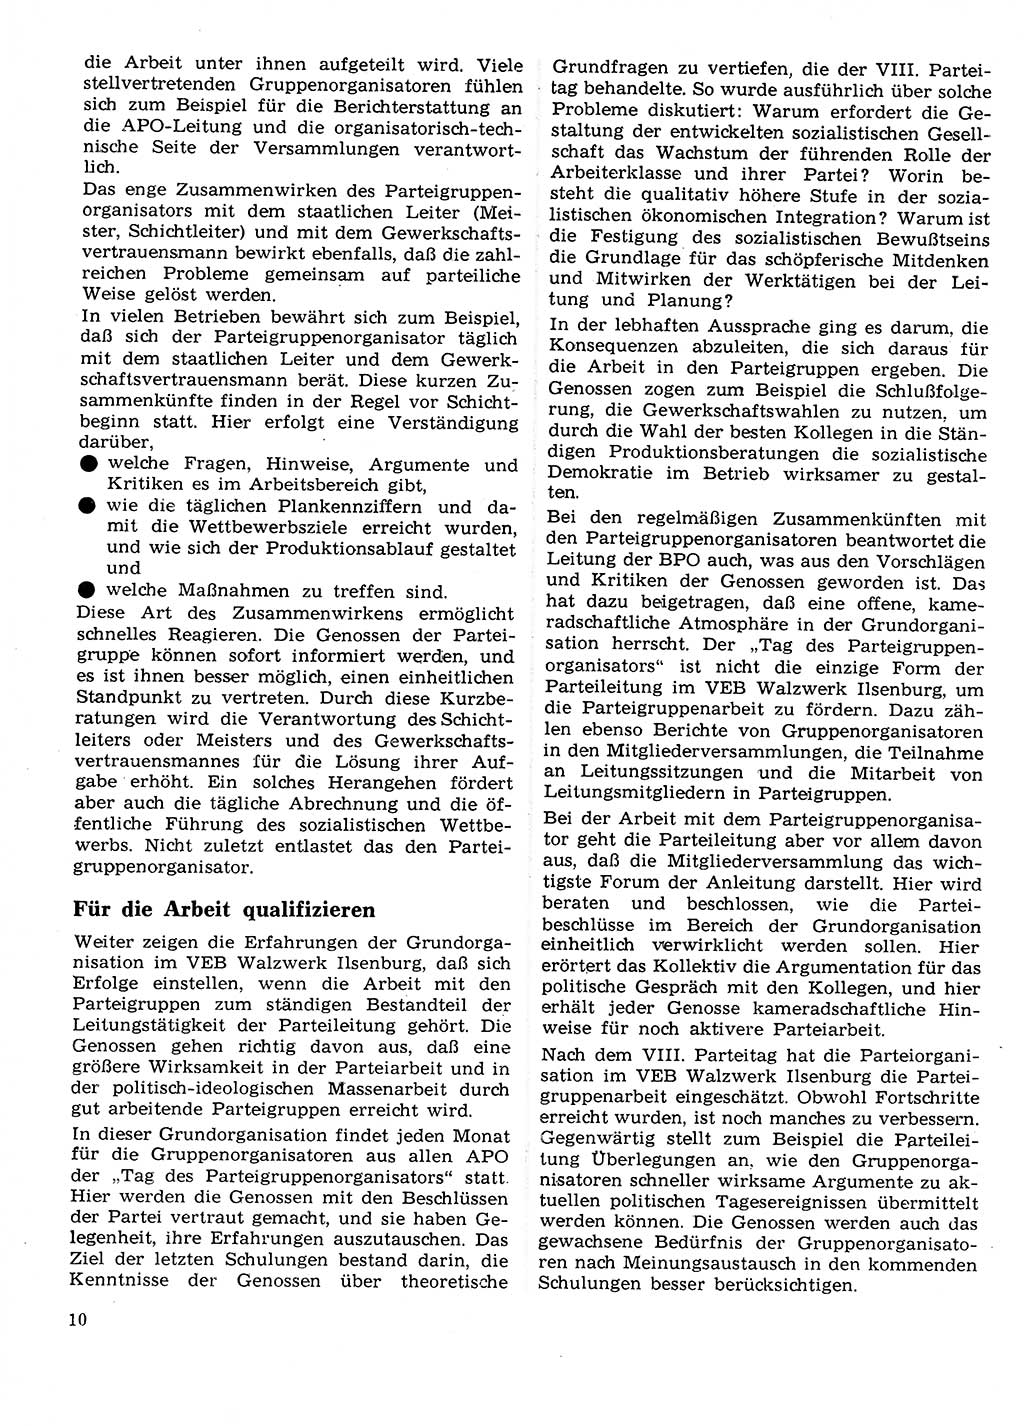 Neuer Weg (NW), Organ des Zentralkomitees (ZK) der SED (Sozialistische Einheitspartei Deutschlands) für Fragen des Parteilebens, 27. Jahrgang [Deutsche Demokratische Republik (DDR)] 1972, Seite 10 (NW ZK SED DDR 1972, S. 10)